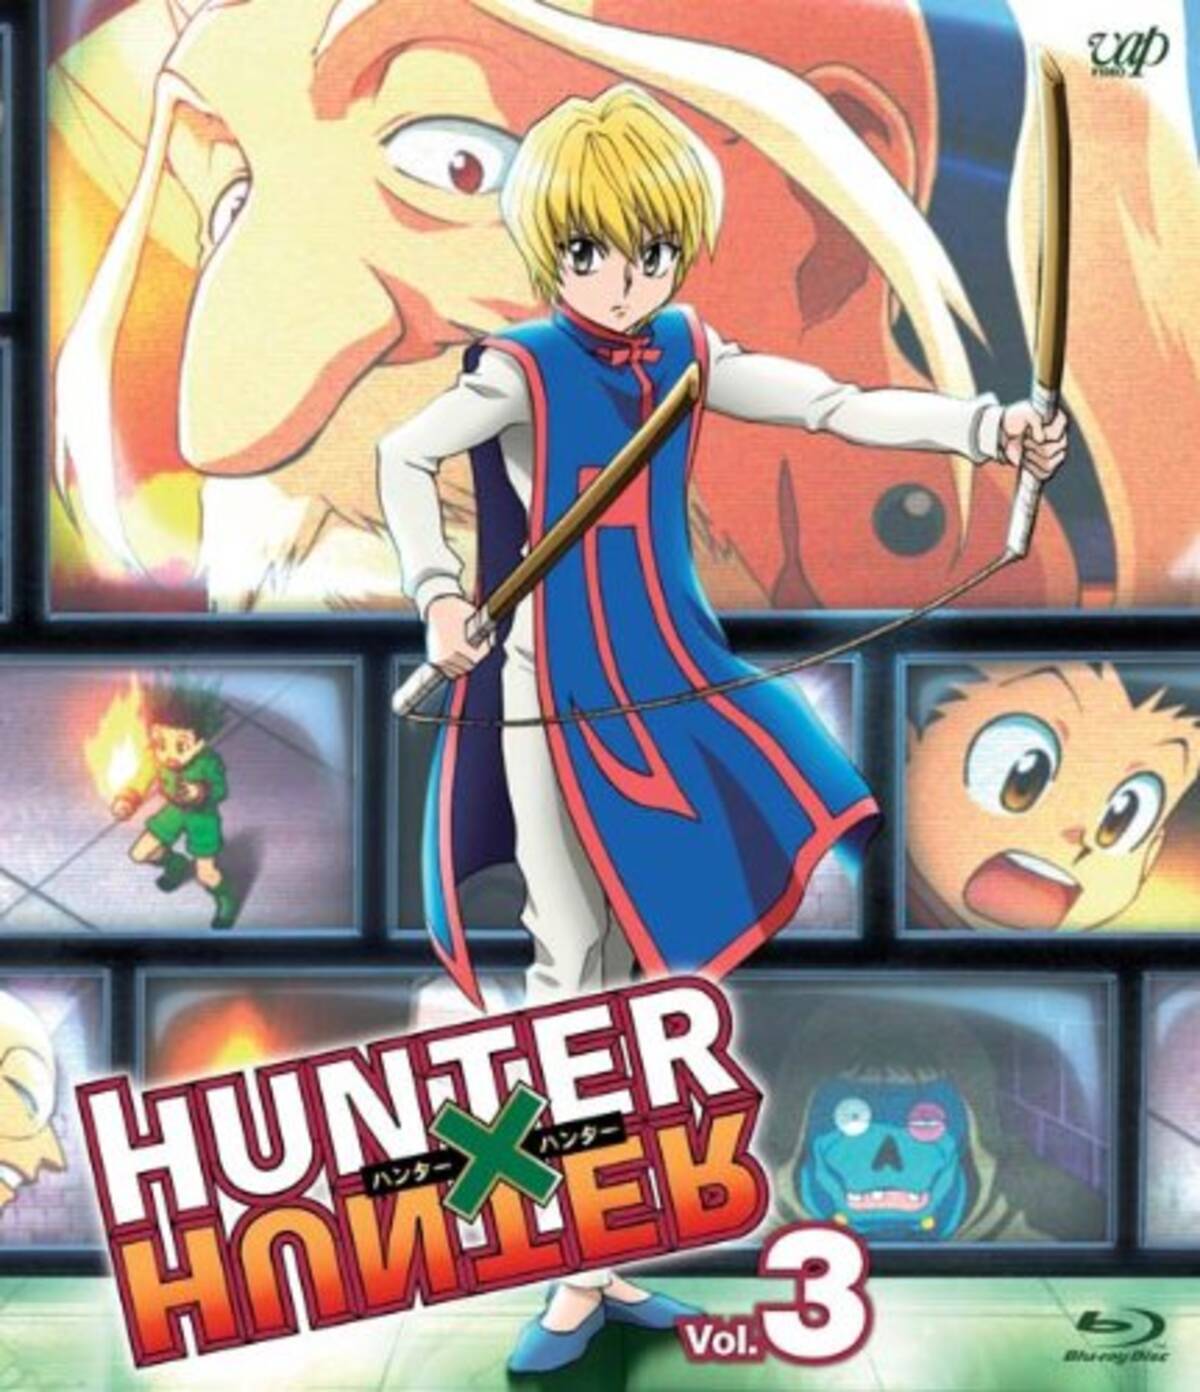 アニメキャラの魅力 クルタ族最後の生き残り 復讐者 クラピカ の魅力とは Hunter Hunter 14年12月6日 エキサイトニュース 2 3